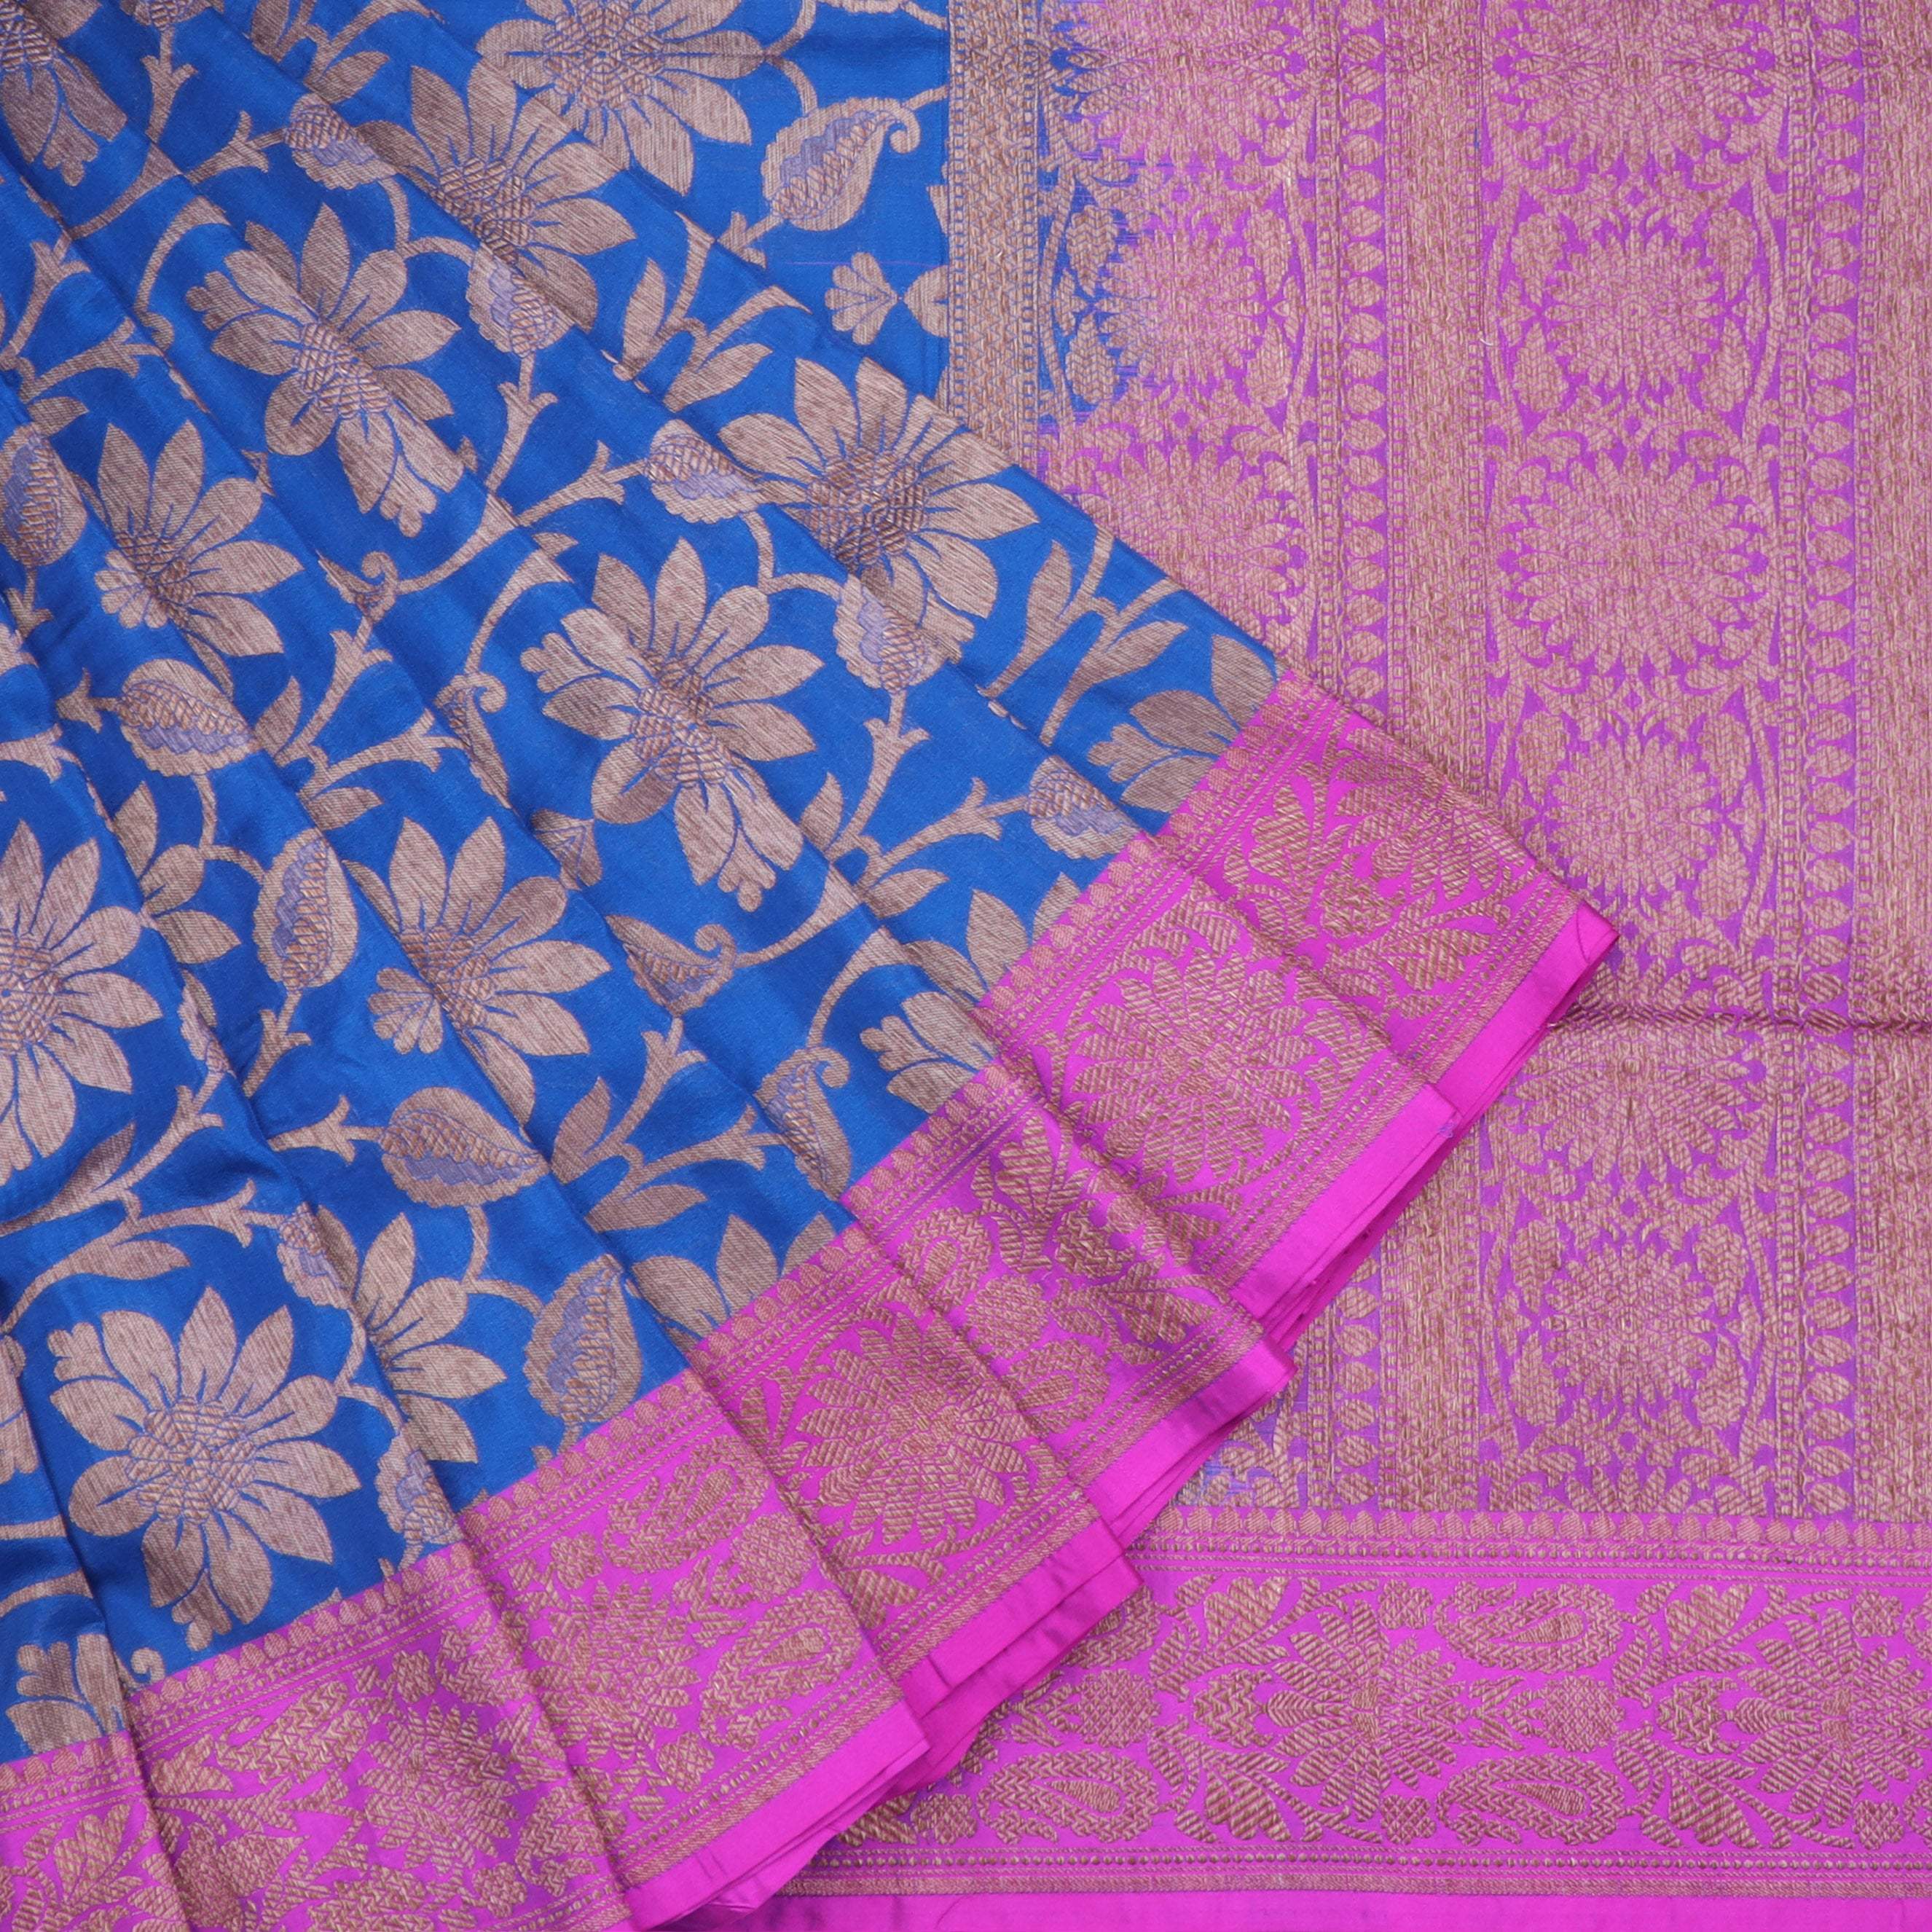 Cobalt Blue Banarasi Silk Saree With Floral Jaal Pattern - Singhania's